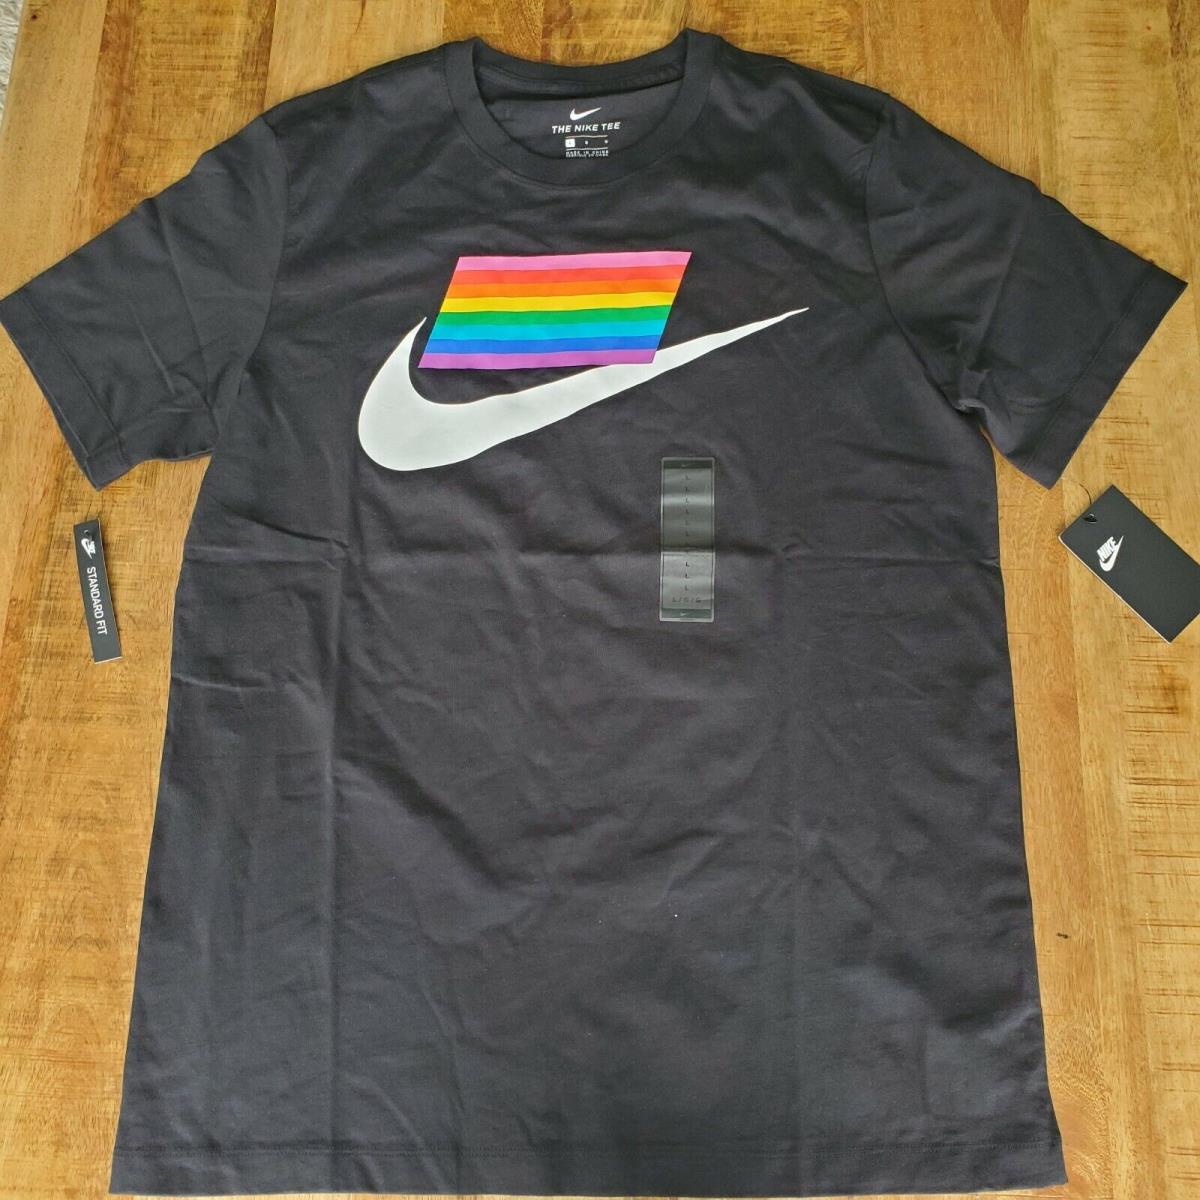 Nike / Pride BE True Shirt Black/white / Sz L / CD9076-010 Equality